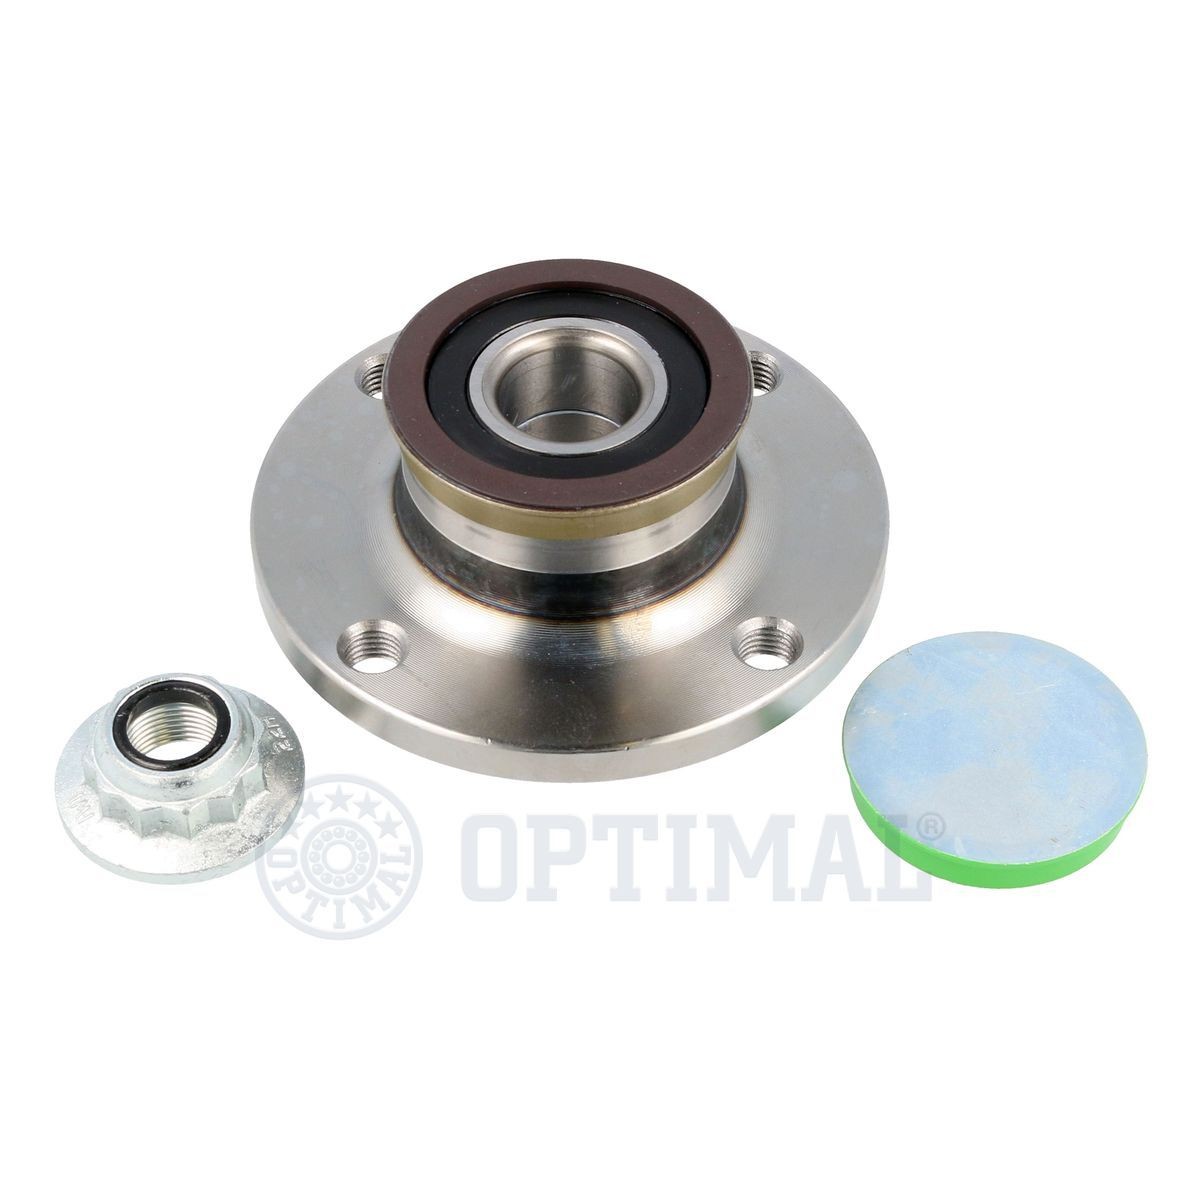 OPTIMAL 102069 Kit cuscinetto ruota con anello sensore magnetico integrato, 120 mm